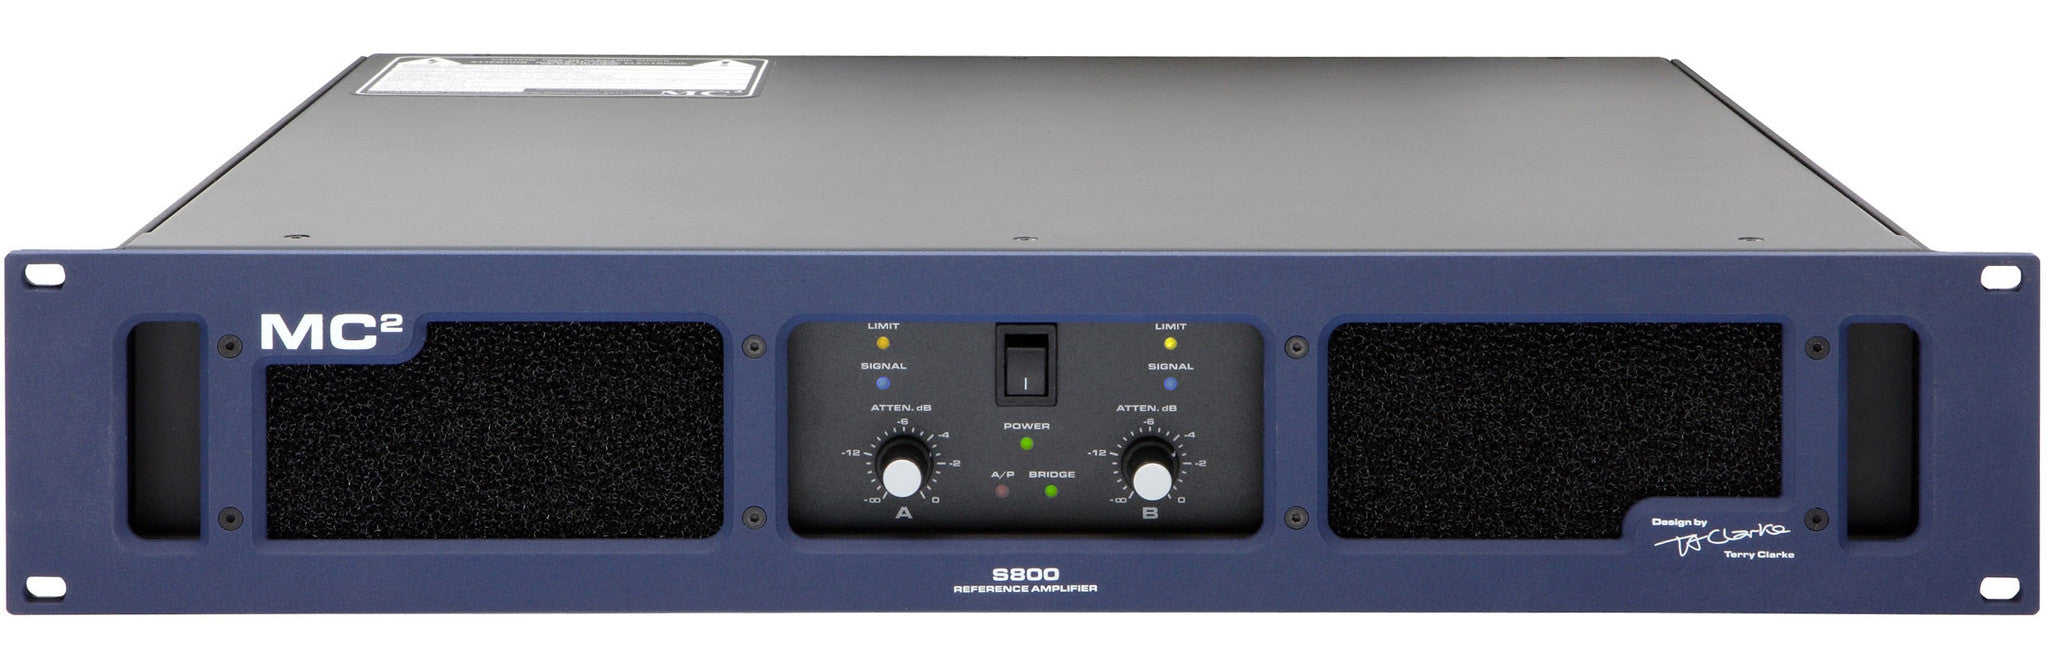 Accessories - MC2 Audio - MC2 S800 - Professional Audio Design, Inc